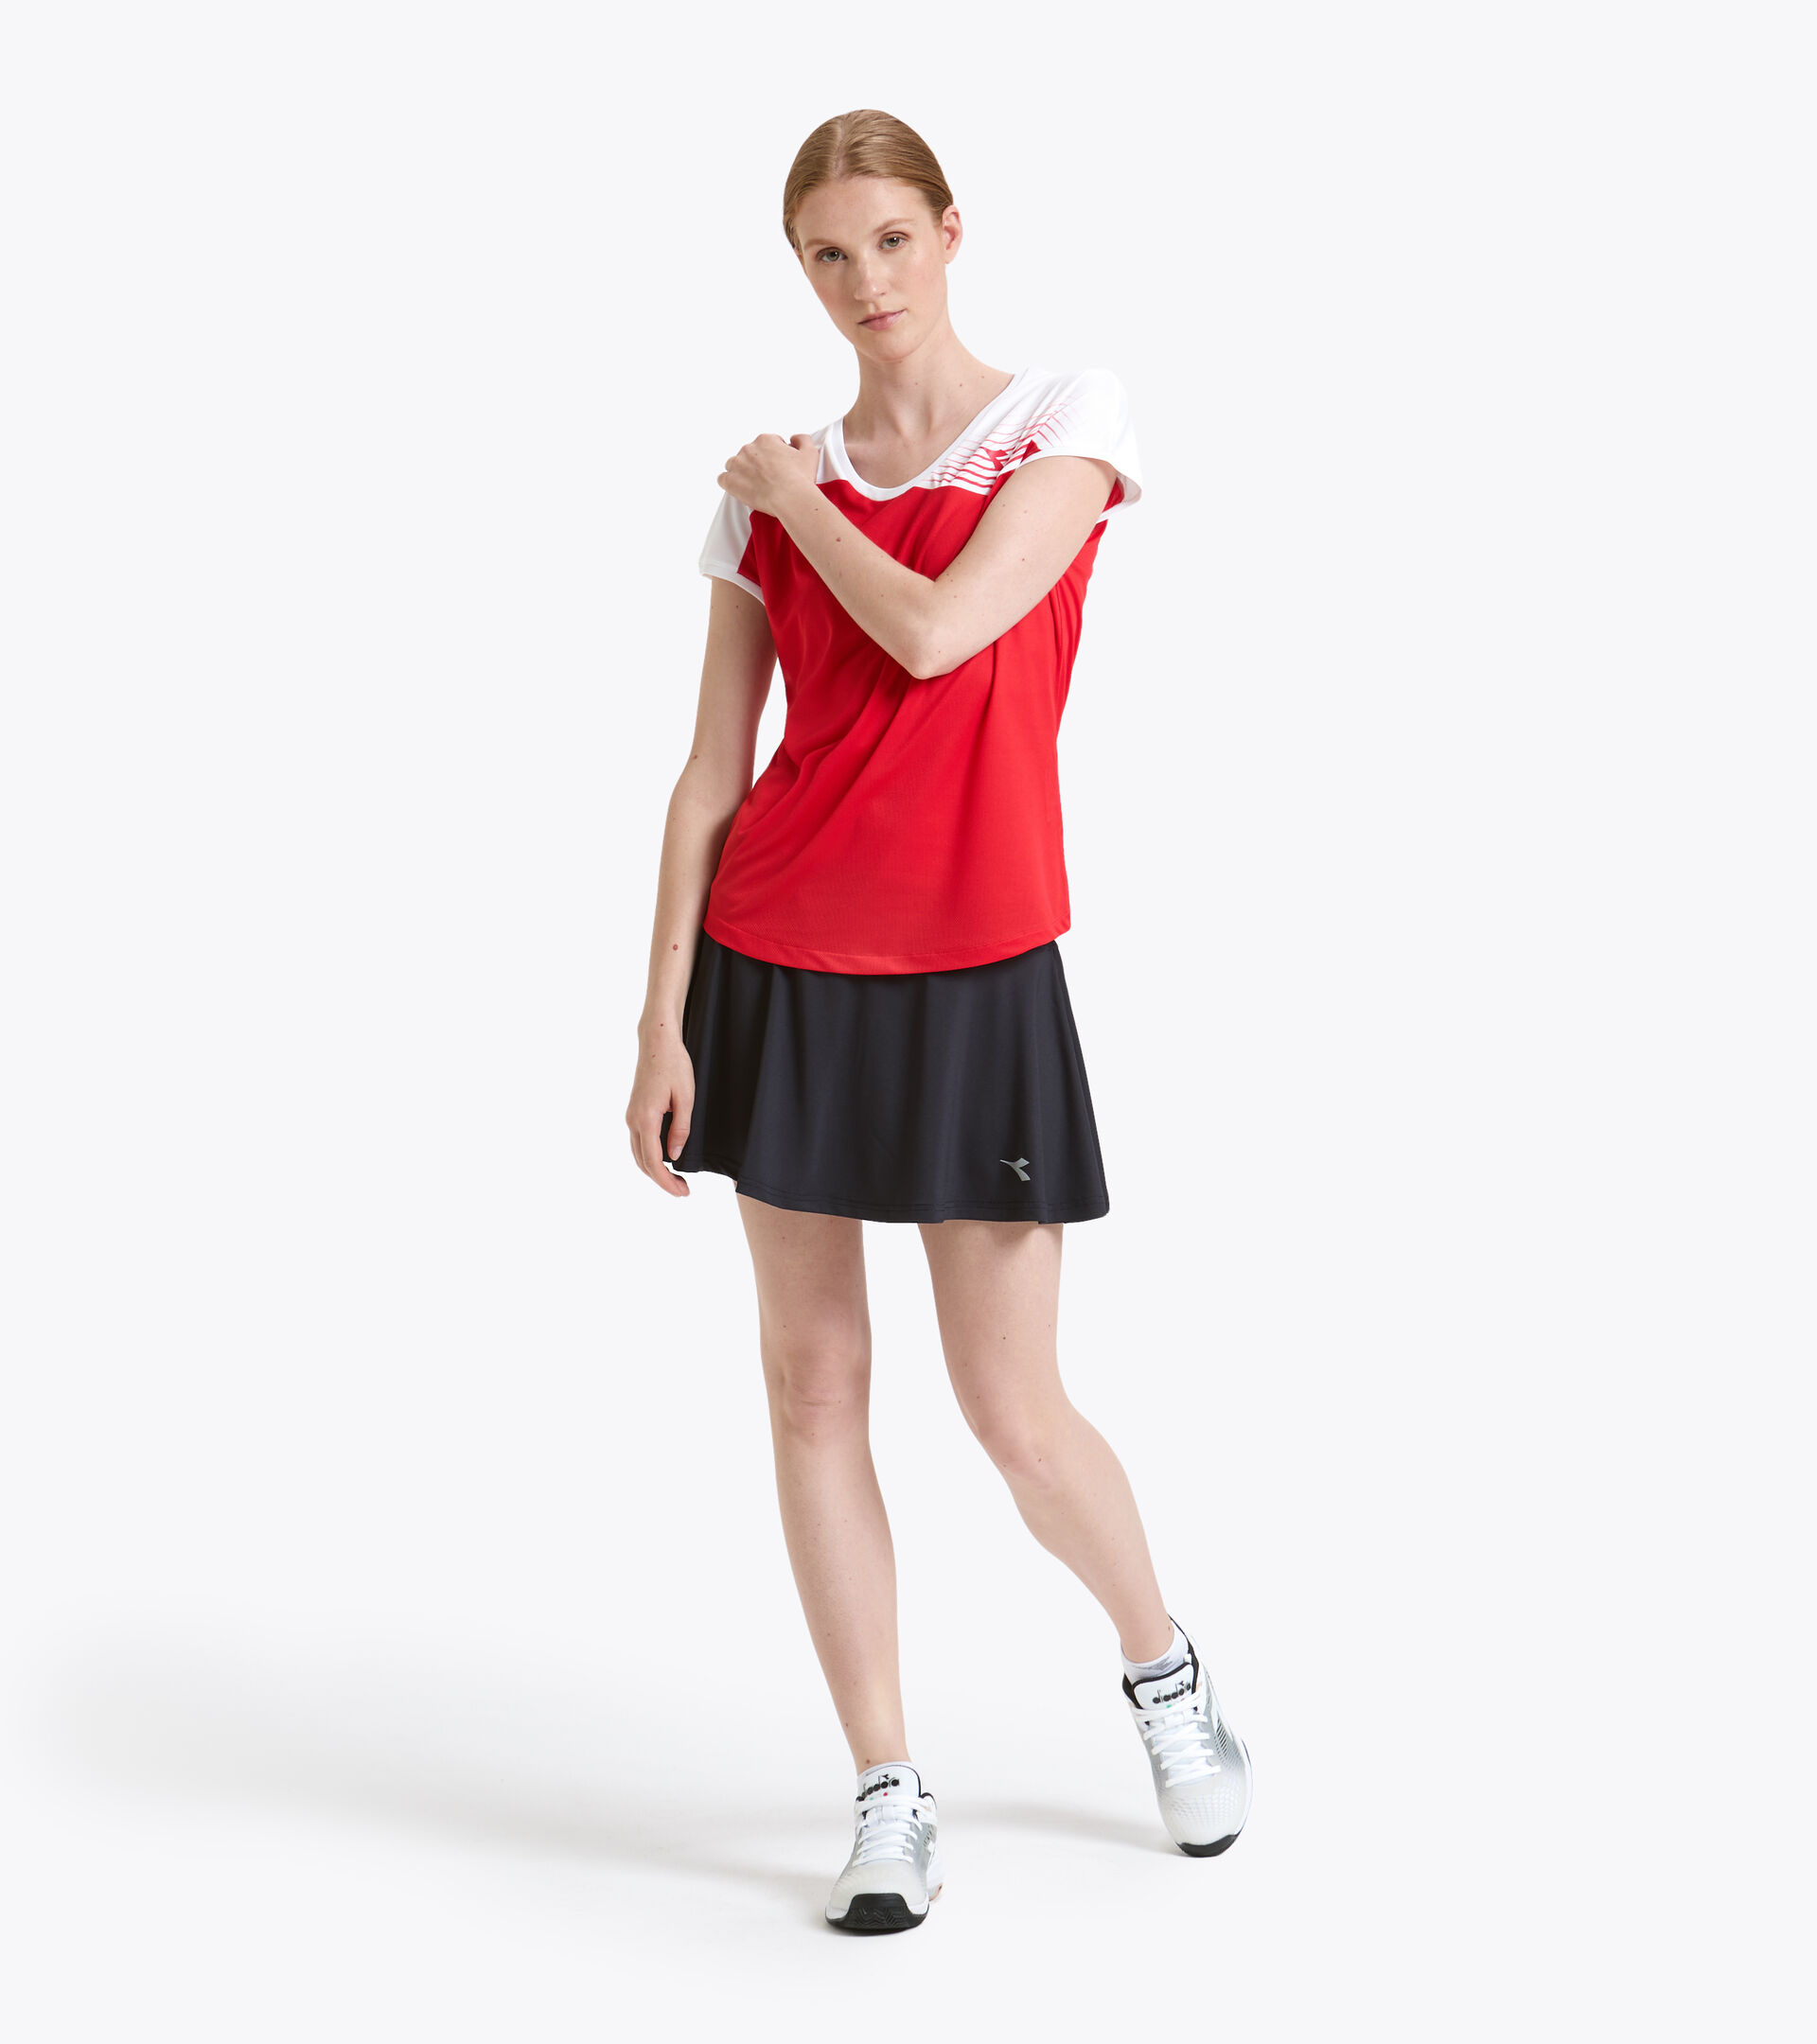 Tennis-T-Shirt - Damen L. T-SHIRT COURT TOMATENROT - Diadora